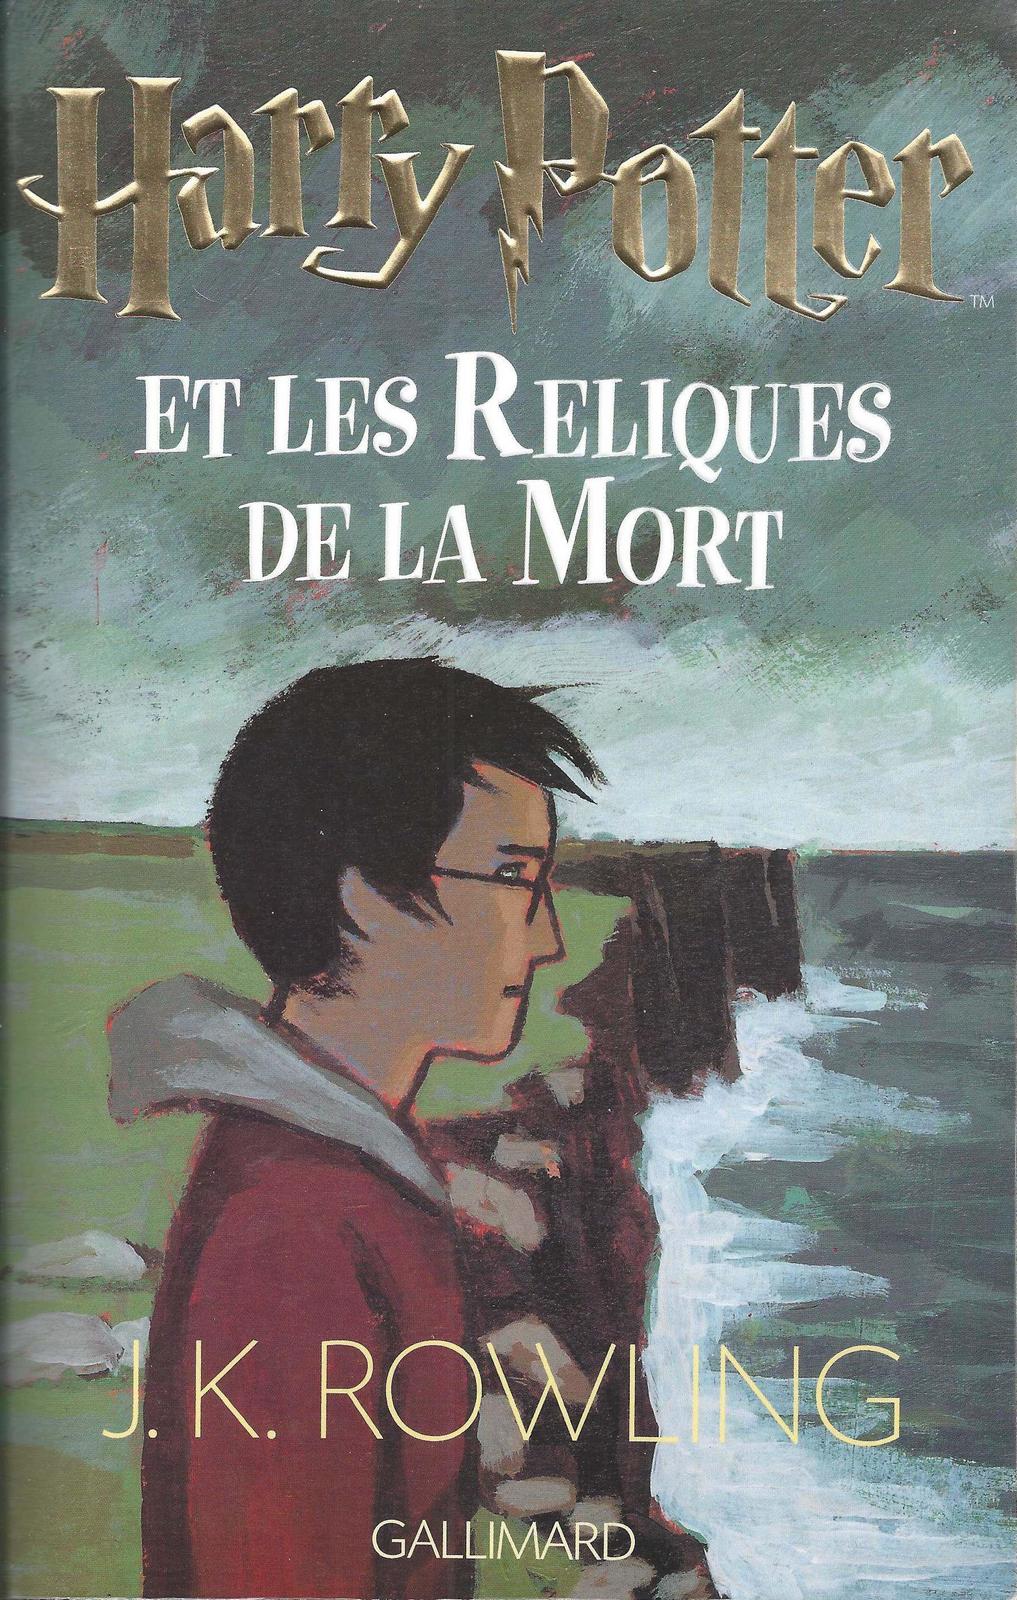 J. K. Rowling: Harry Potter et les reliques de la mort (French language, 2007)